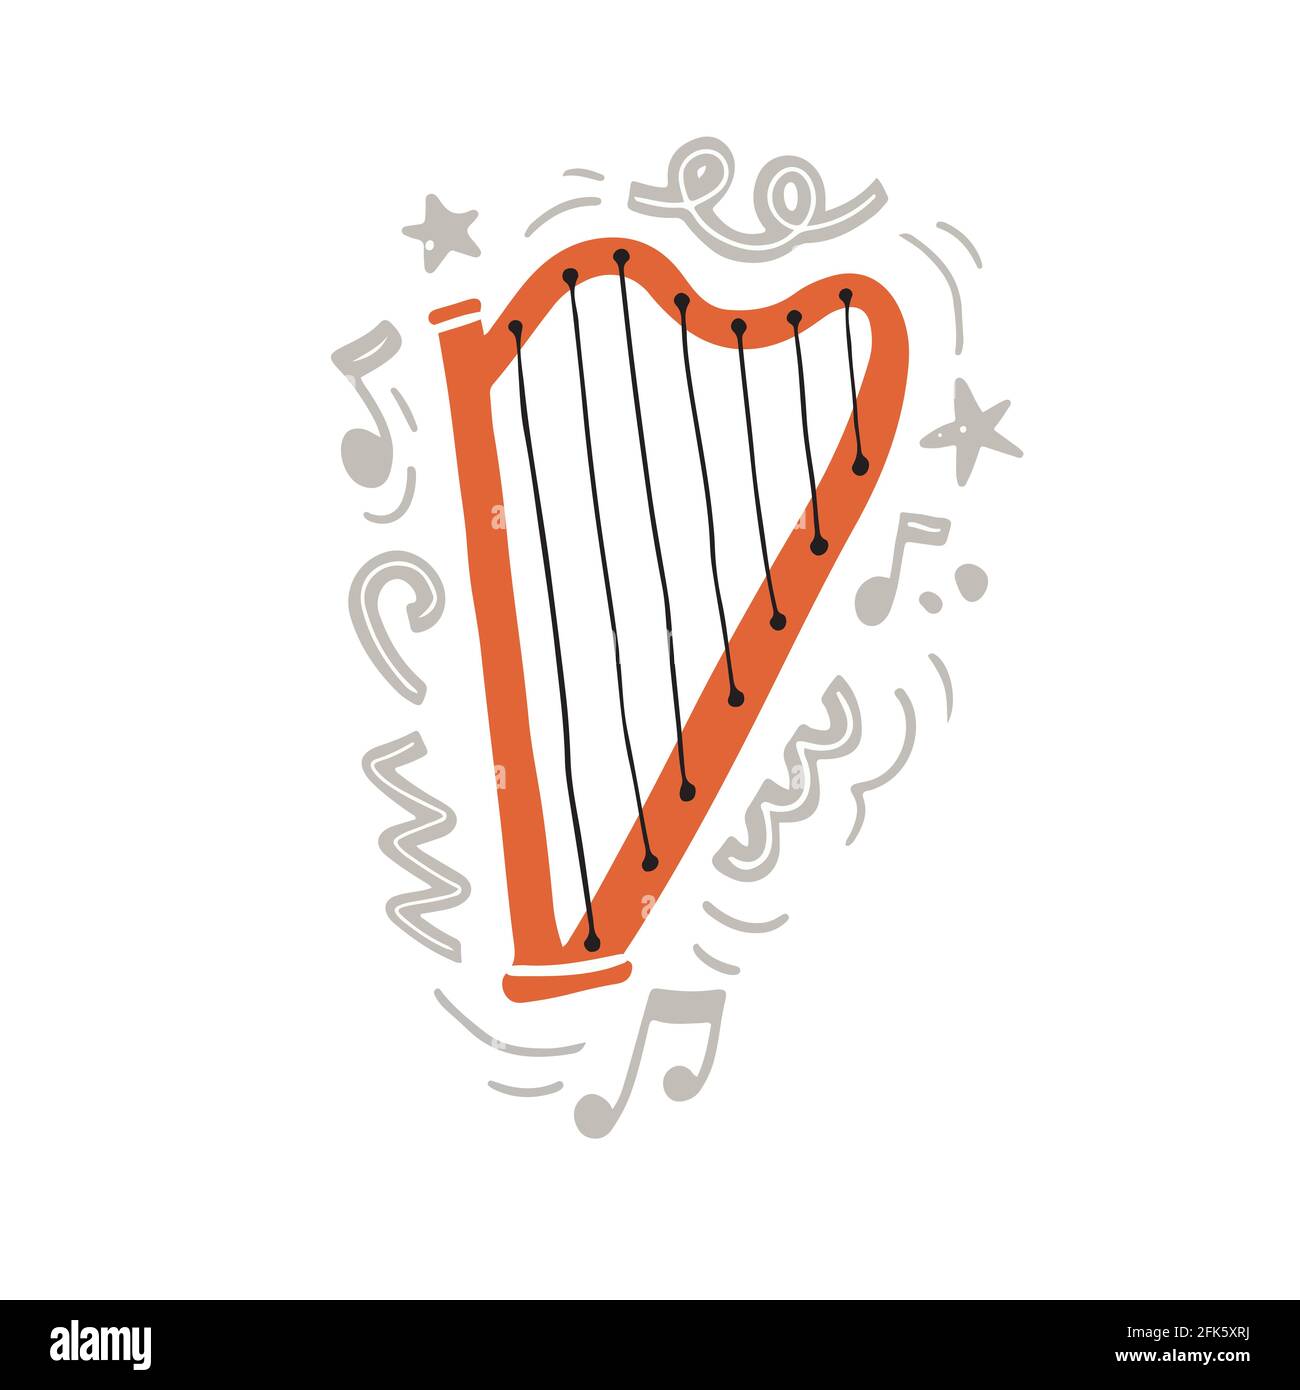 Illustration vectorielle de la harpe traditionnelle orange avec des cordes noires main style minimaliste plat, orné de décorations grises abstraites créatives et des notes comme symbole de la musique classique Illustration de Vecteur